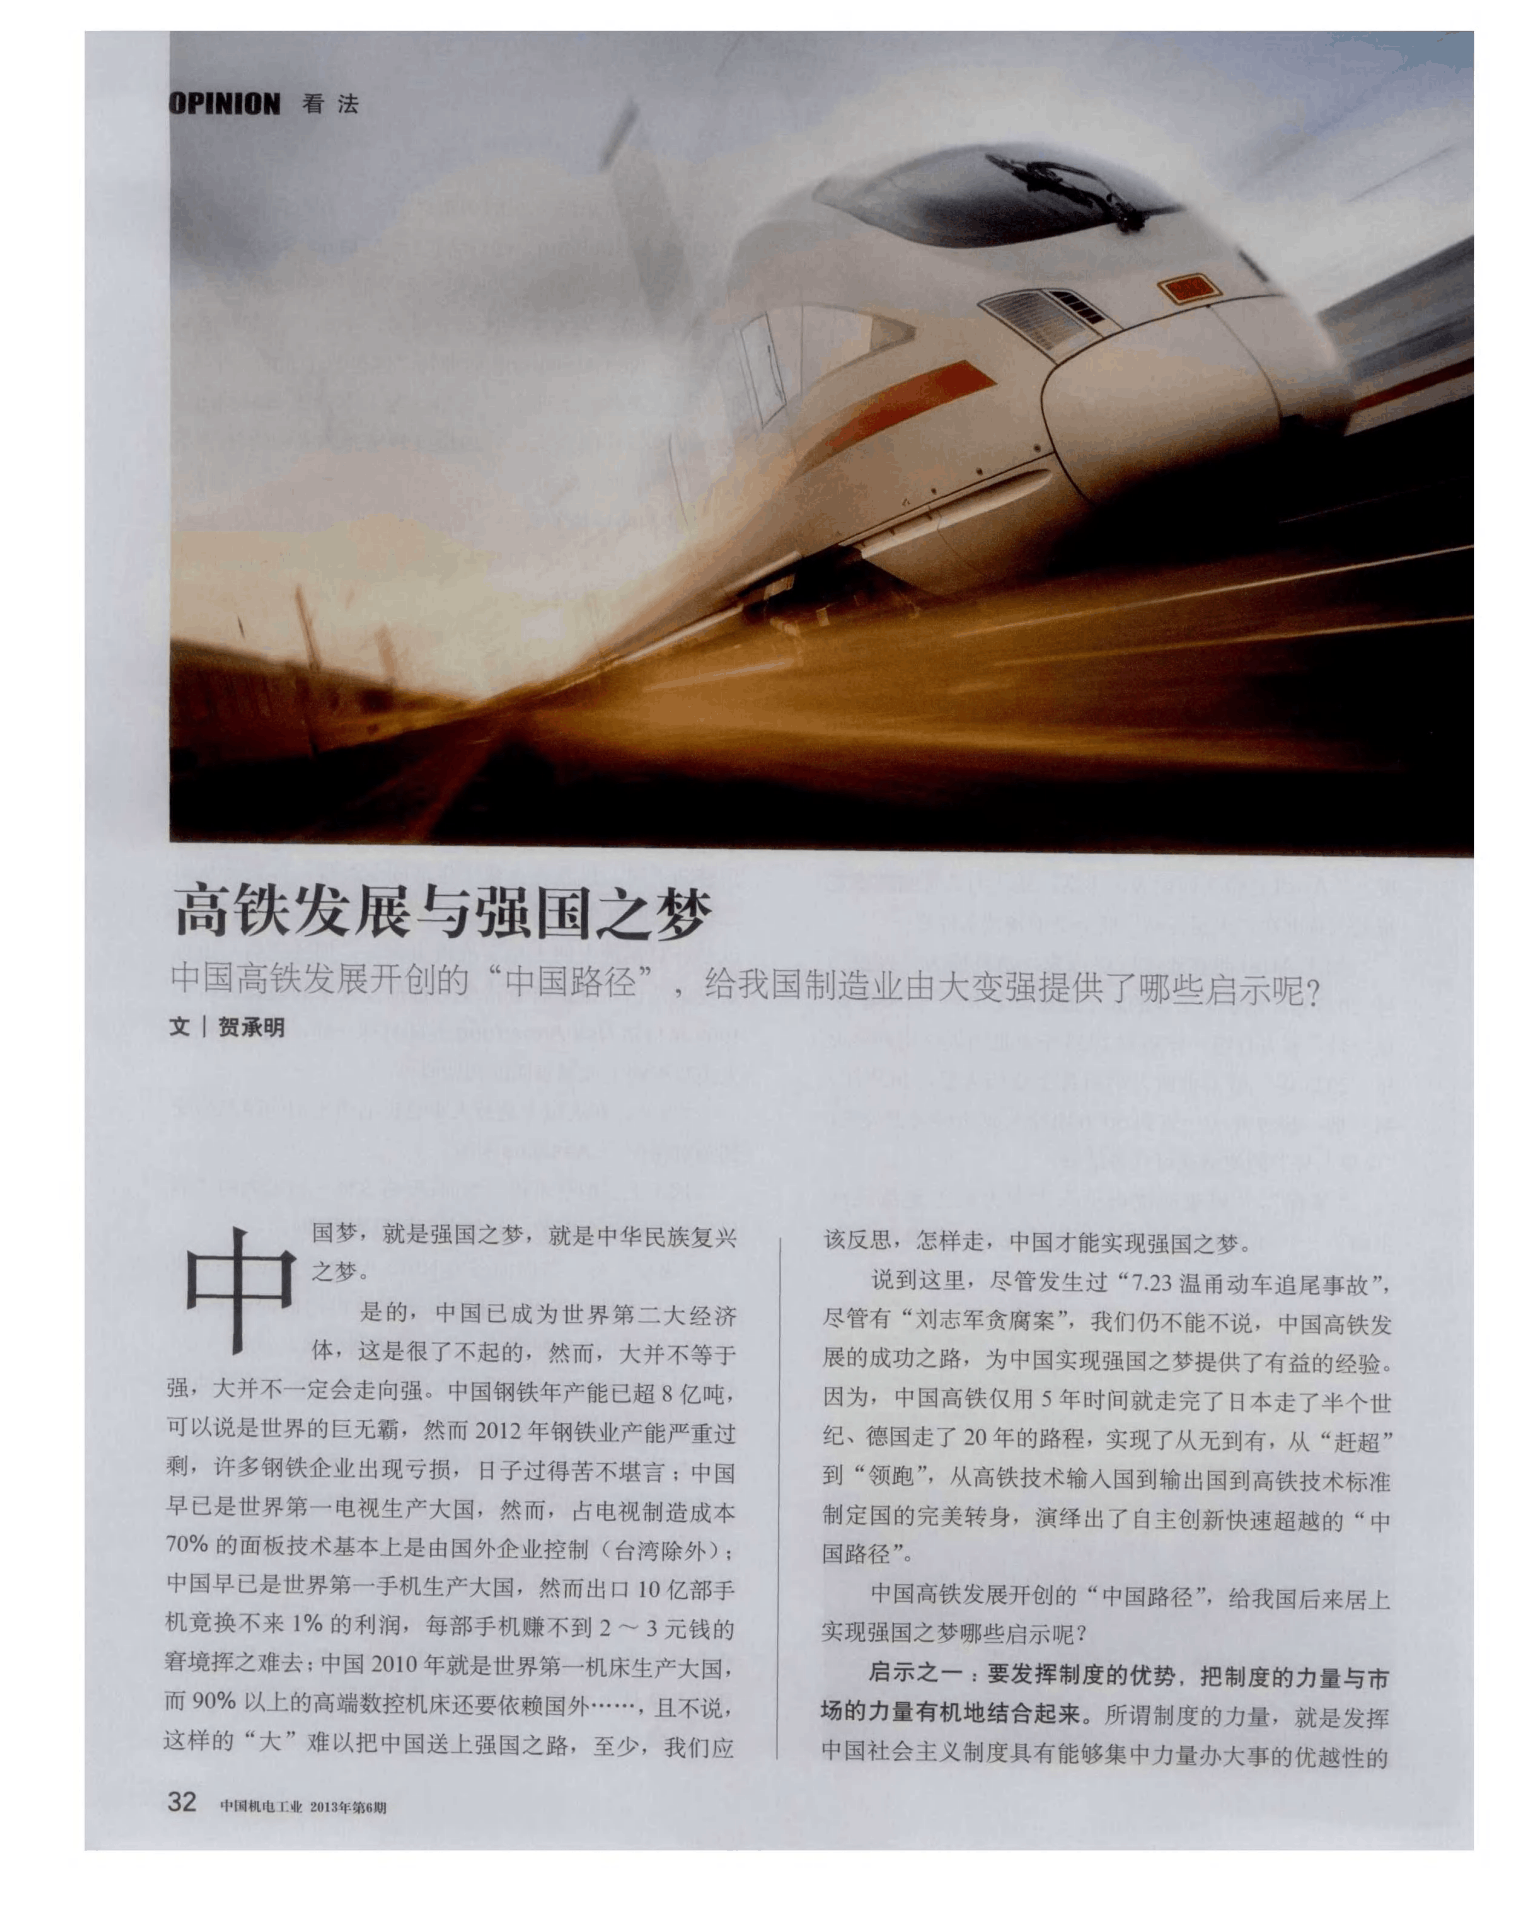 国铁集团:2035年中国铁路发展改革,中国铁路发展展望,中国铁路发展历程将率先建成服务安全优质保障坚强有力